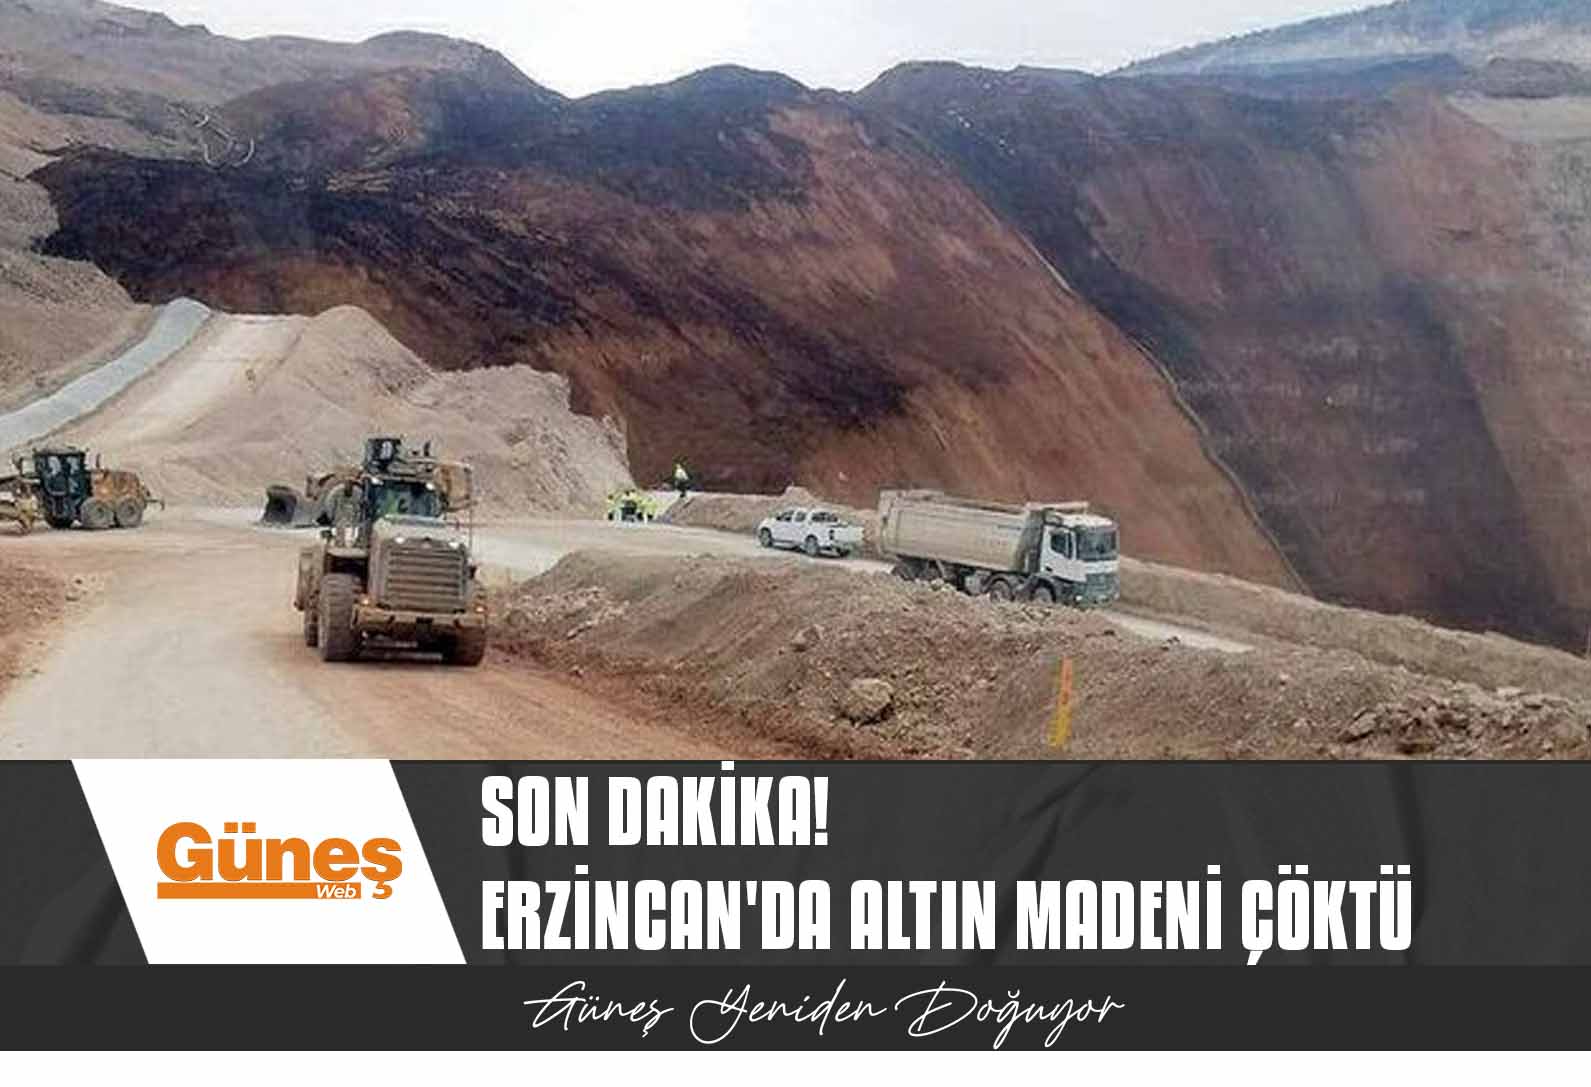 Erzincan’da altın madeninde toprak kayması